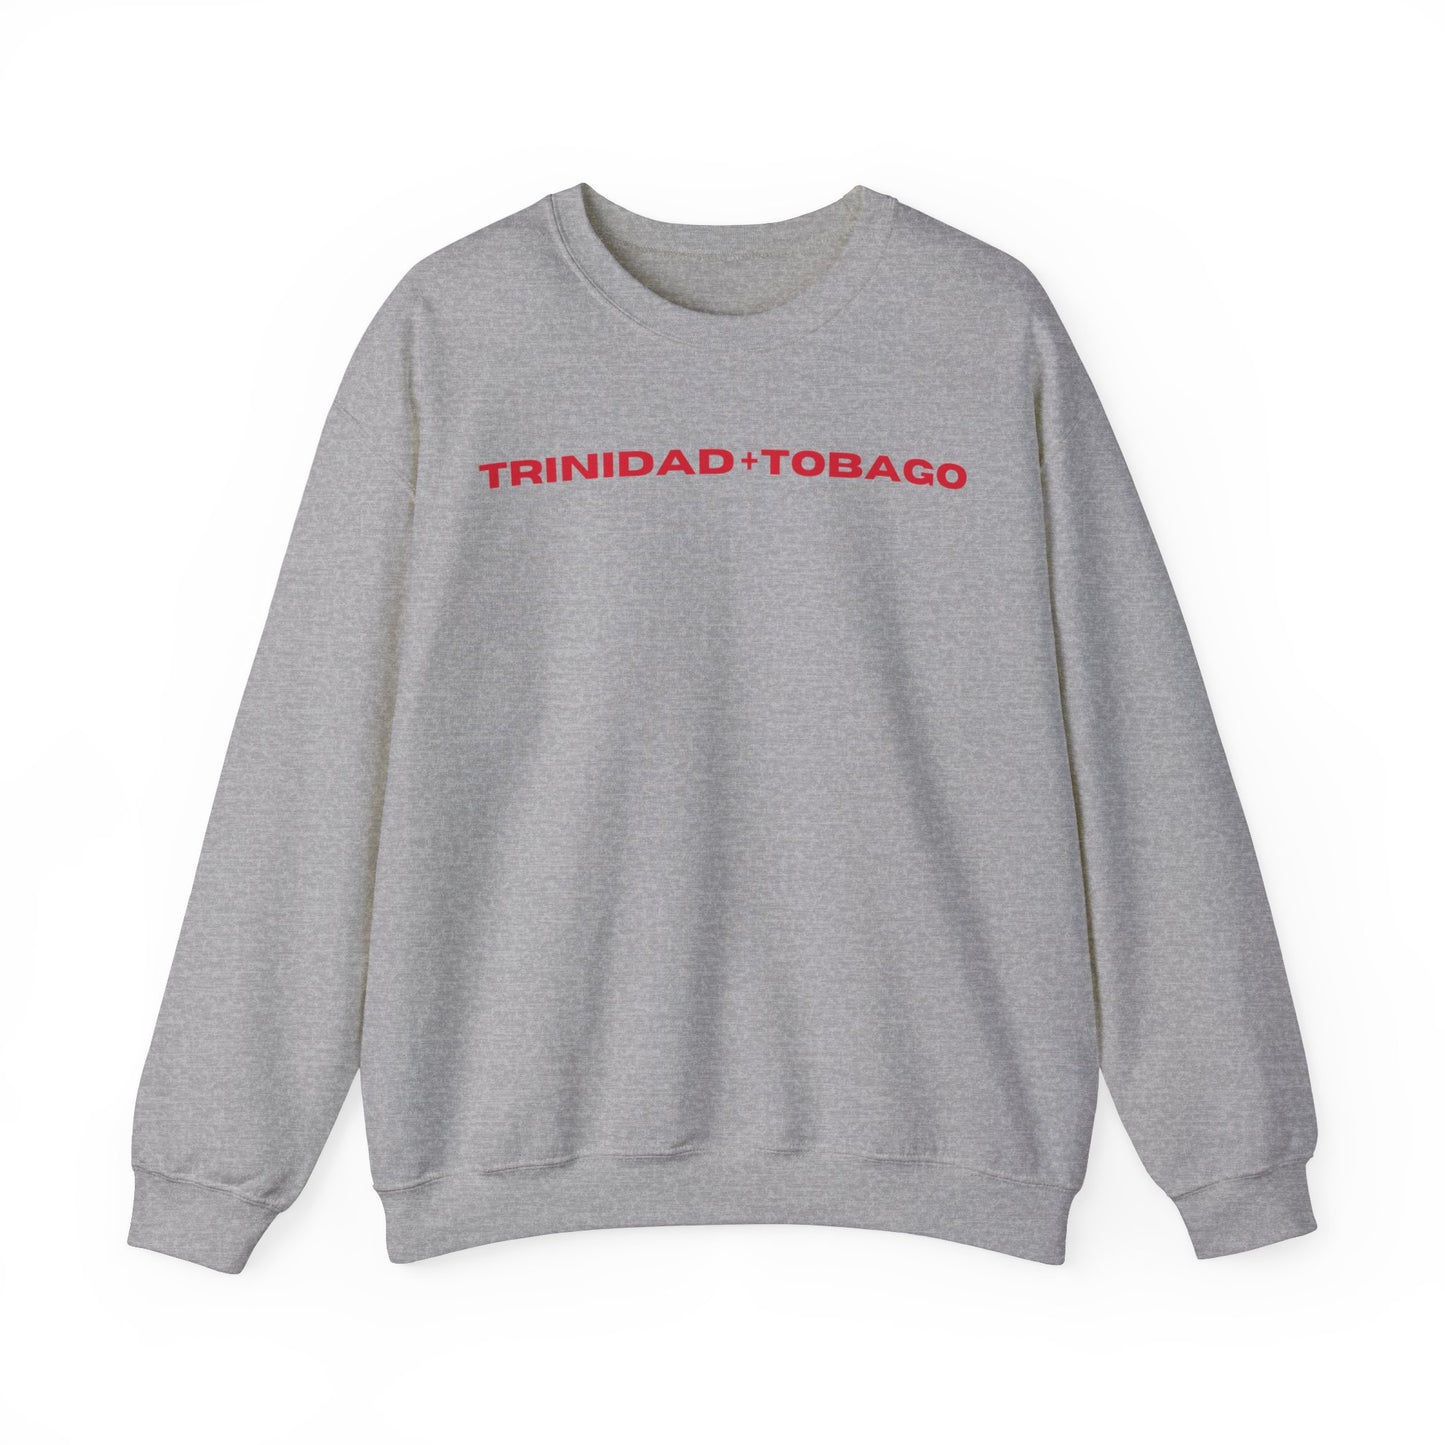 Trinidad + Tobago Crewneck Sweatshirt